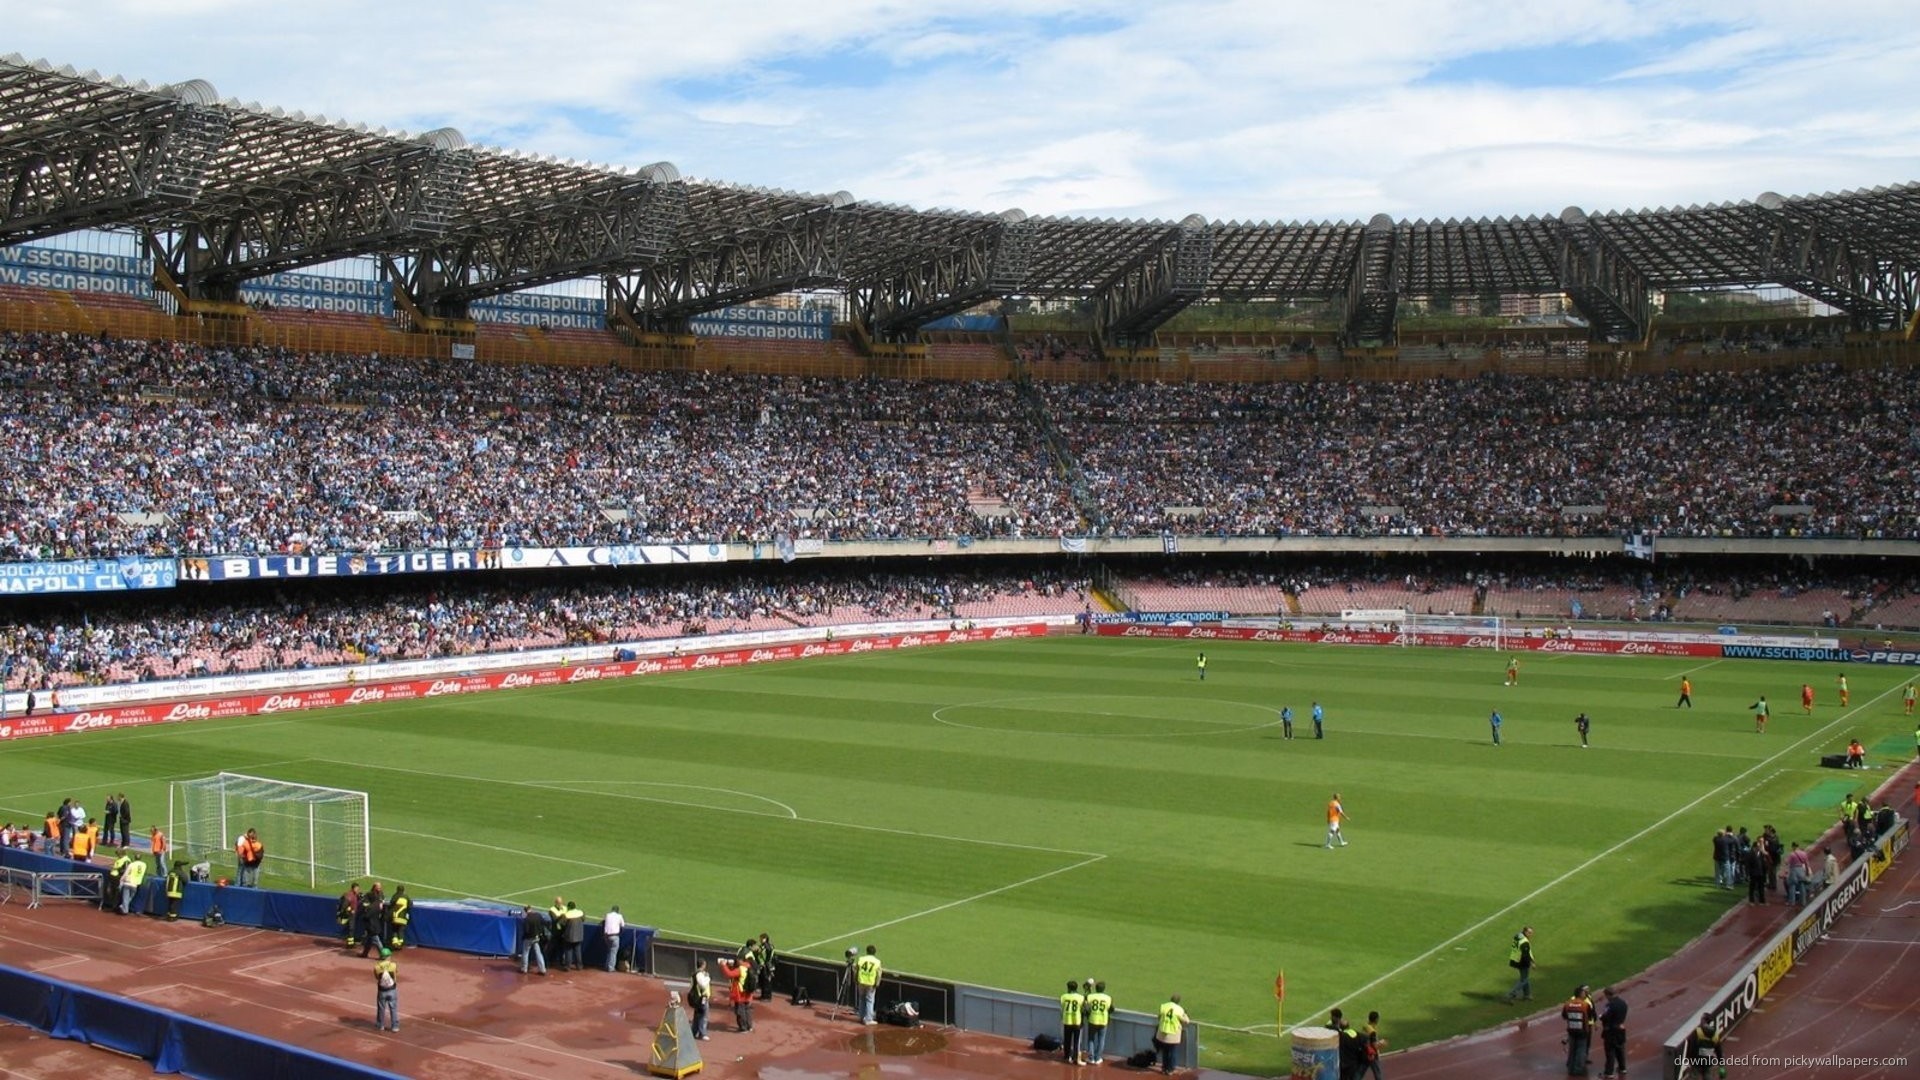 1920x1080 Napoli stadium picture